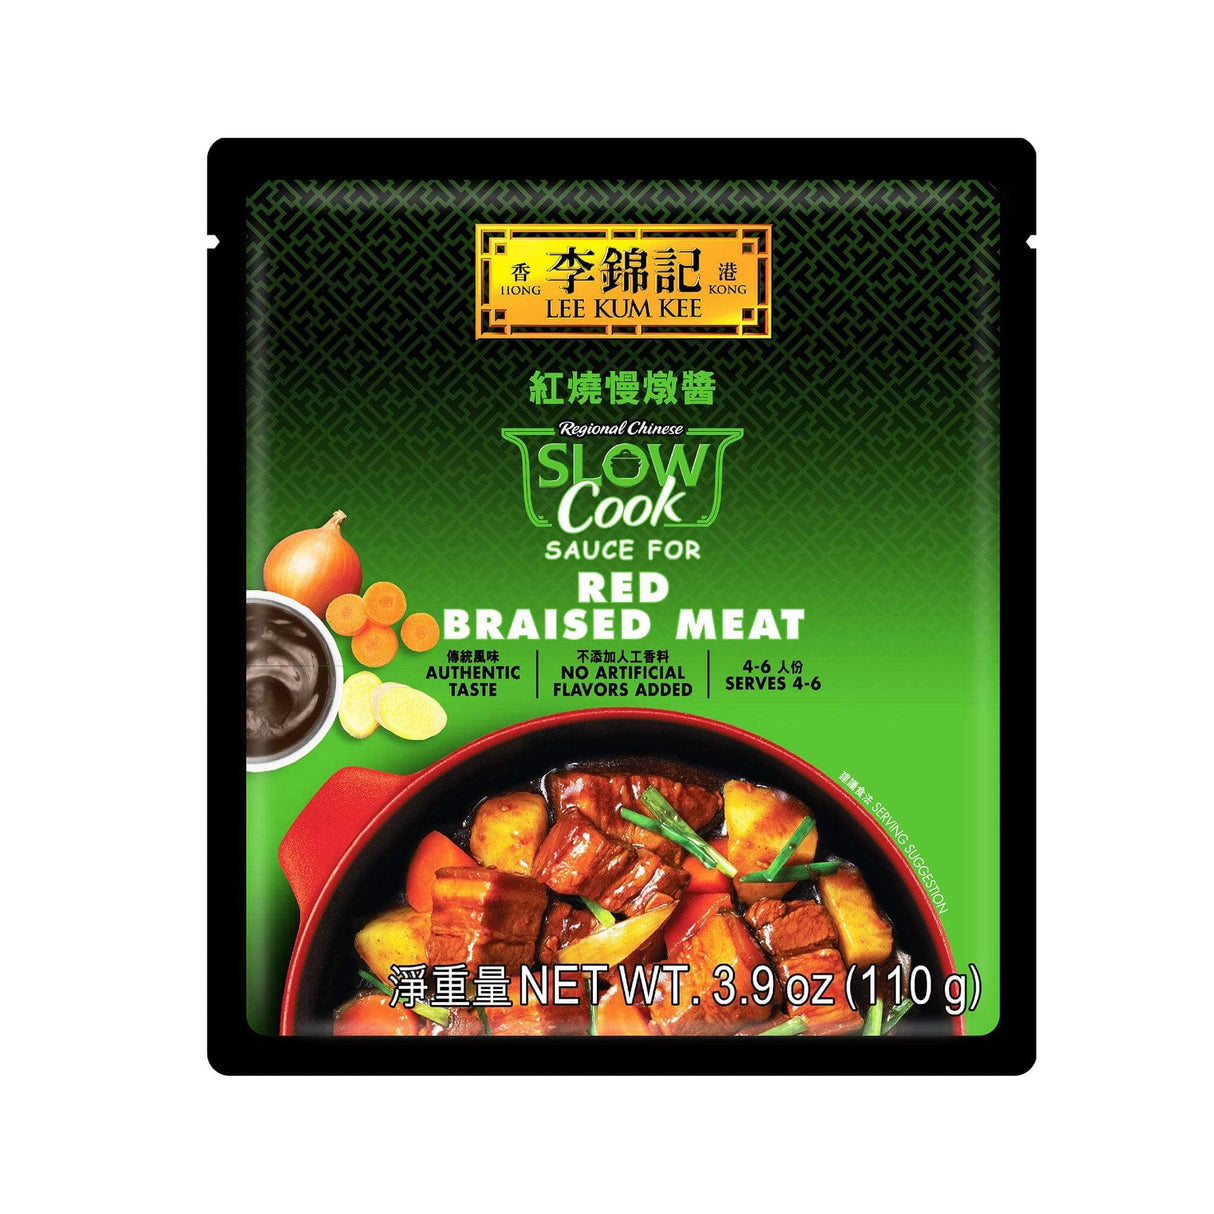 Lee Kum Kee Red Braised Meat